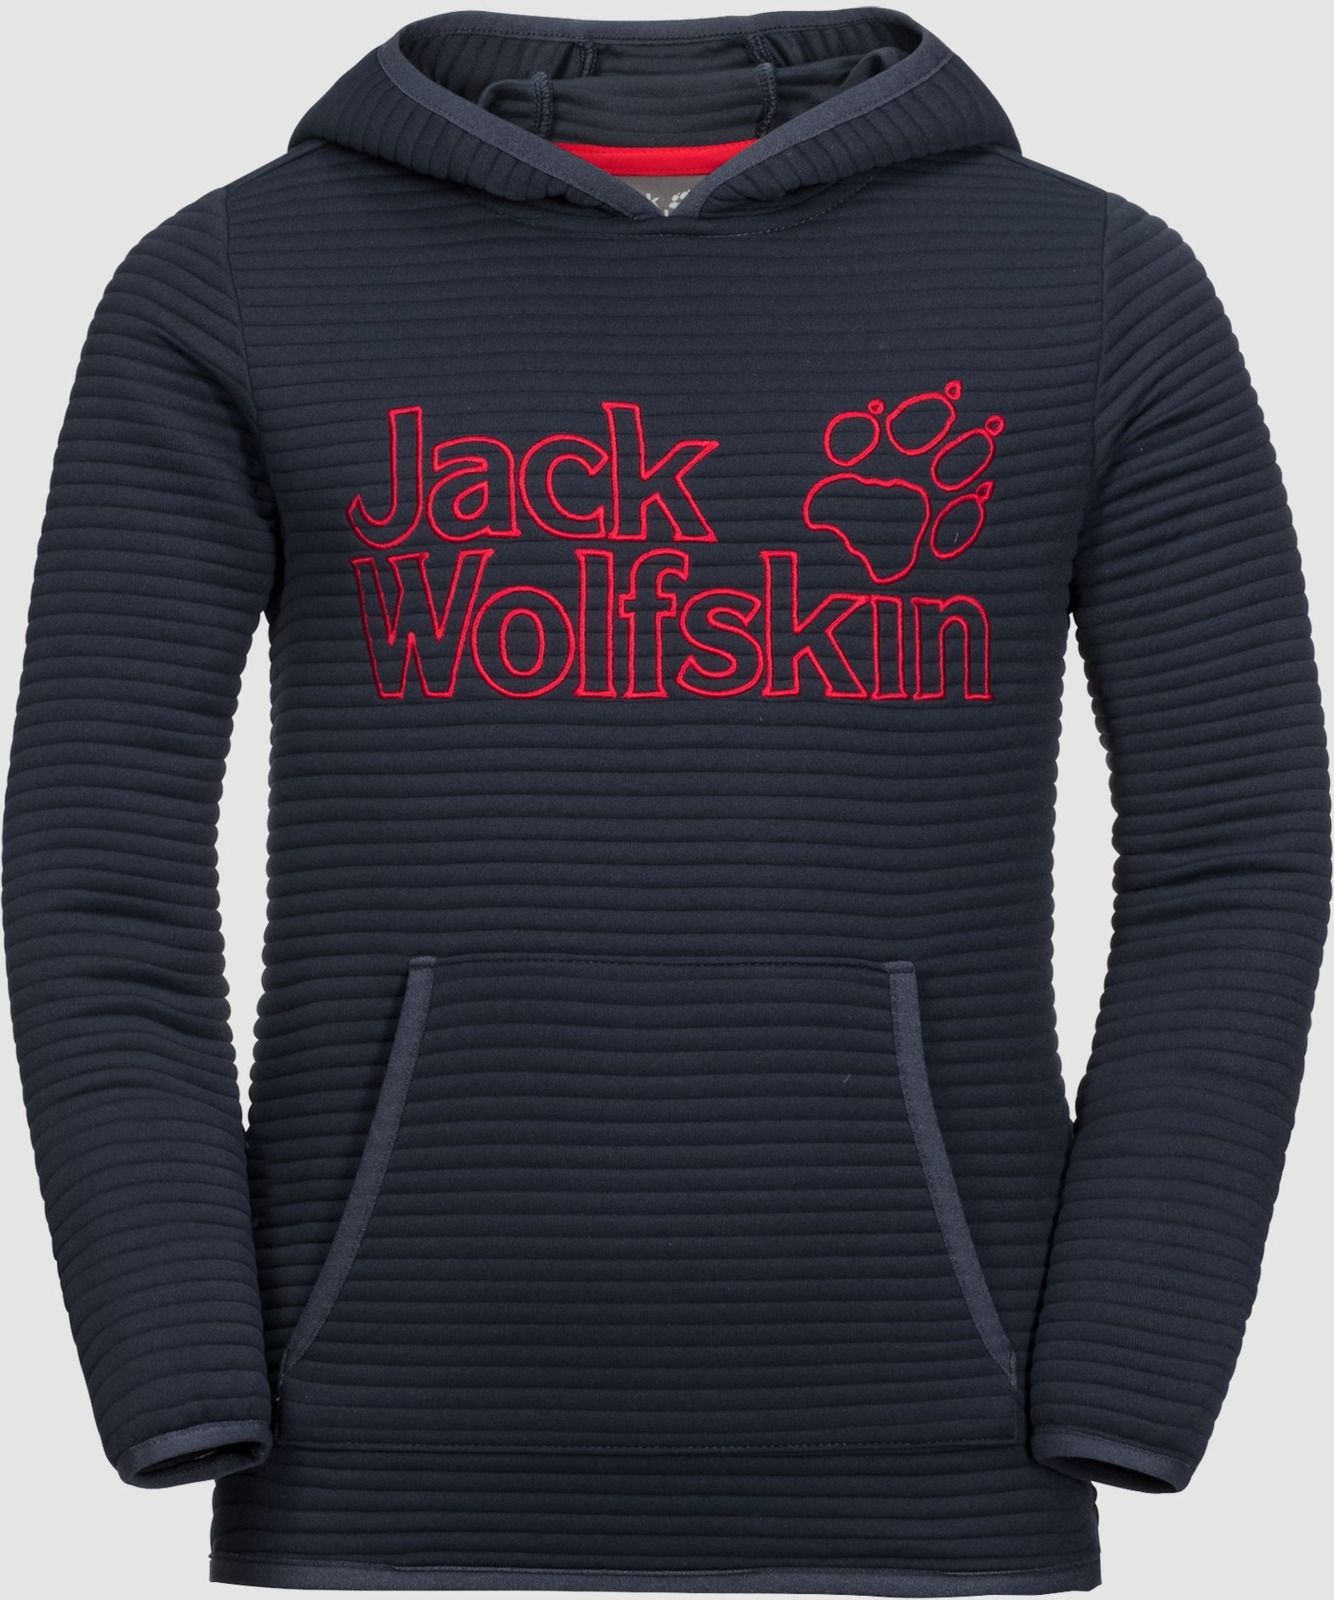   Jack Wolfskin Modesto Hoody, : -. 1607721-1010.  140/146